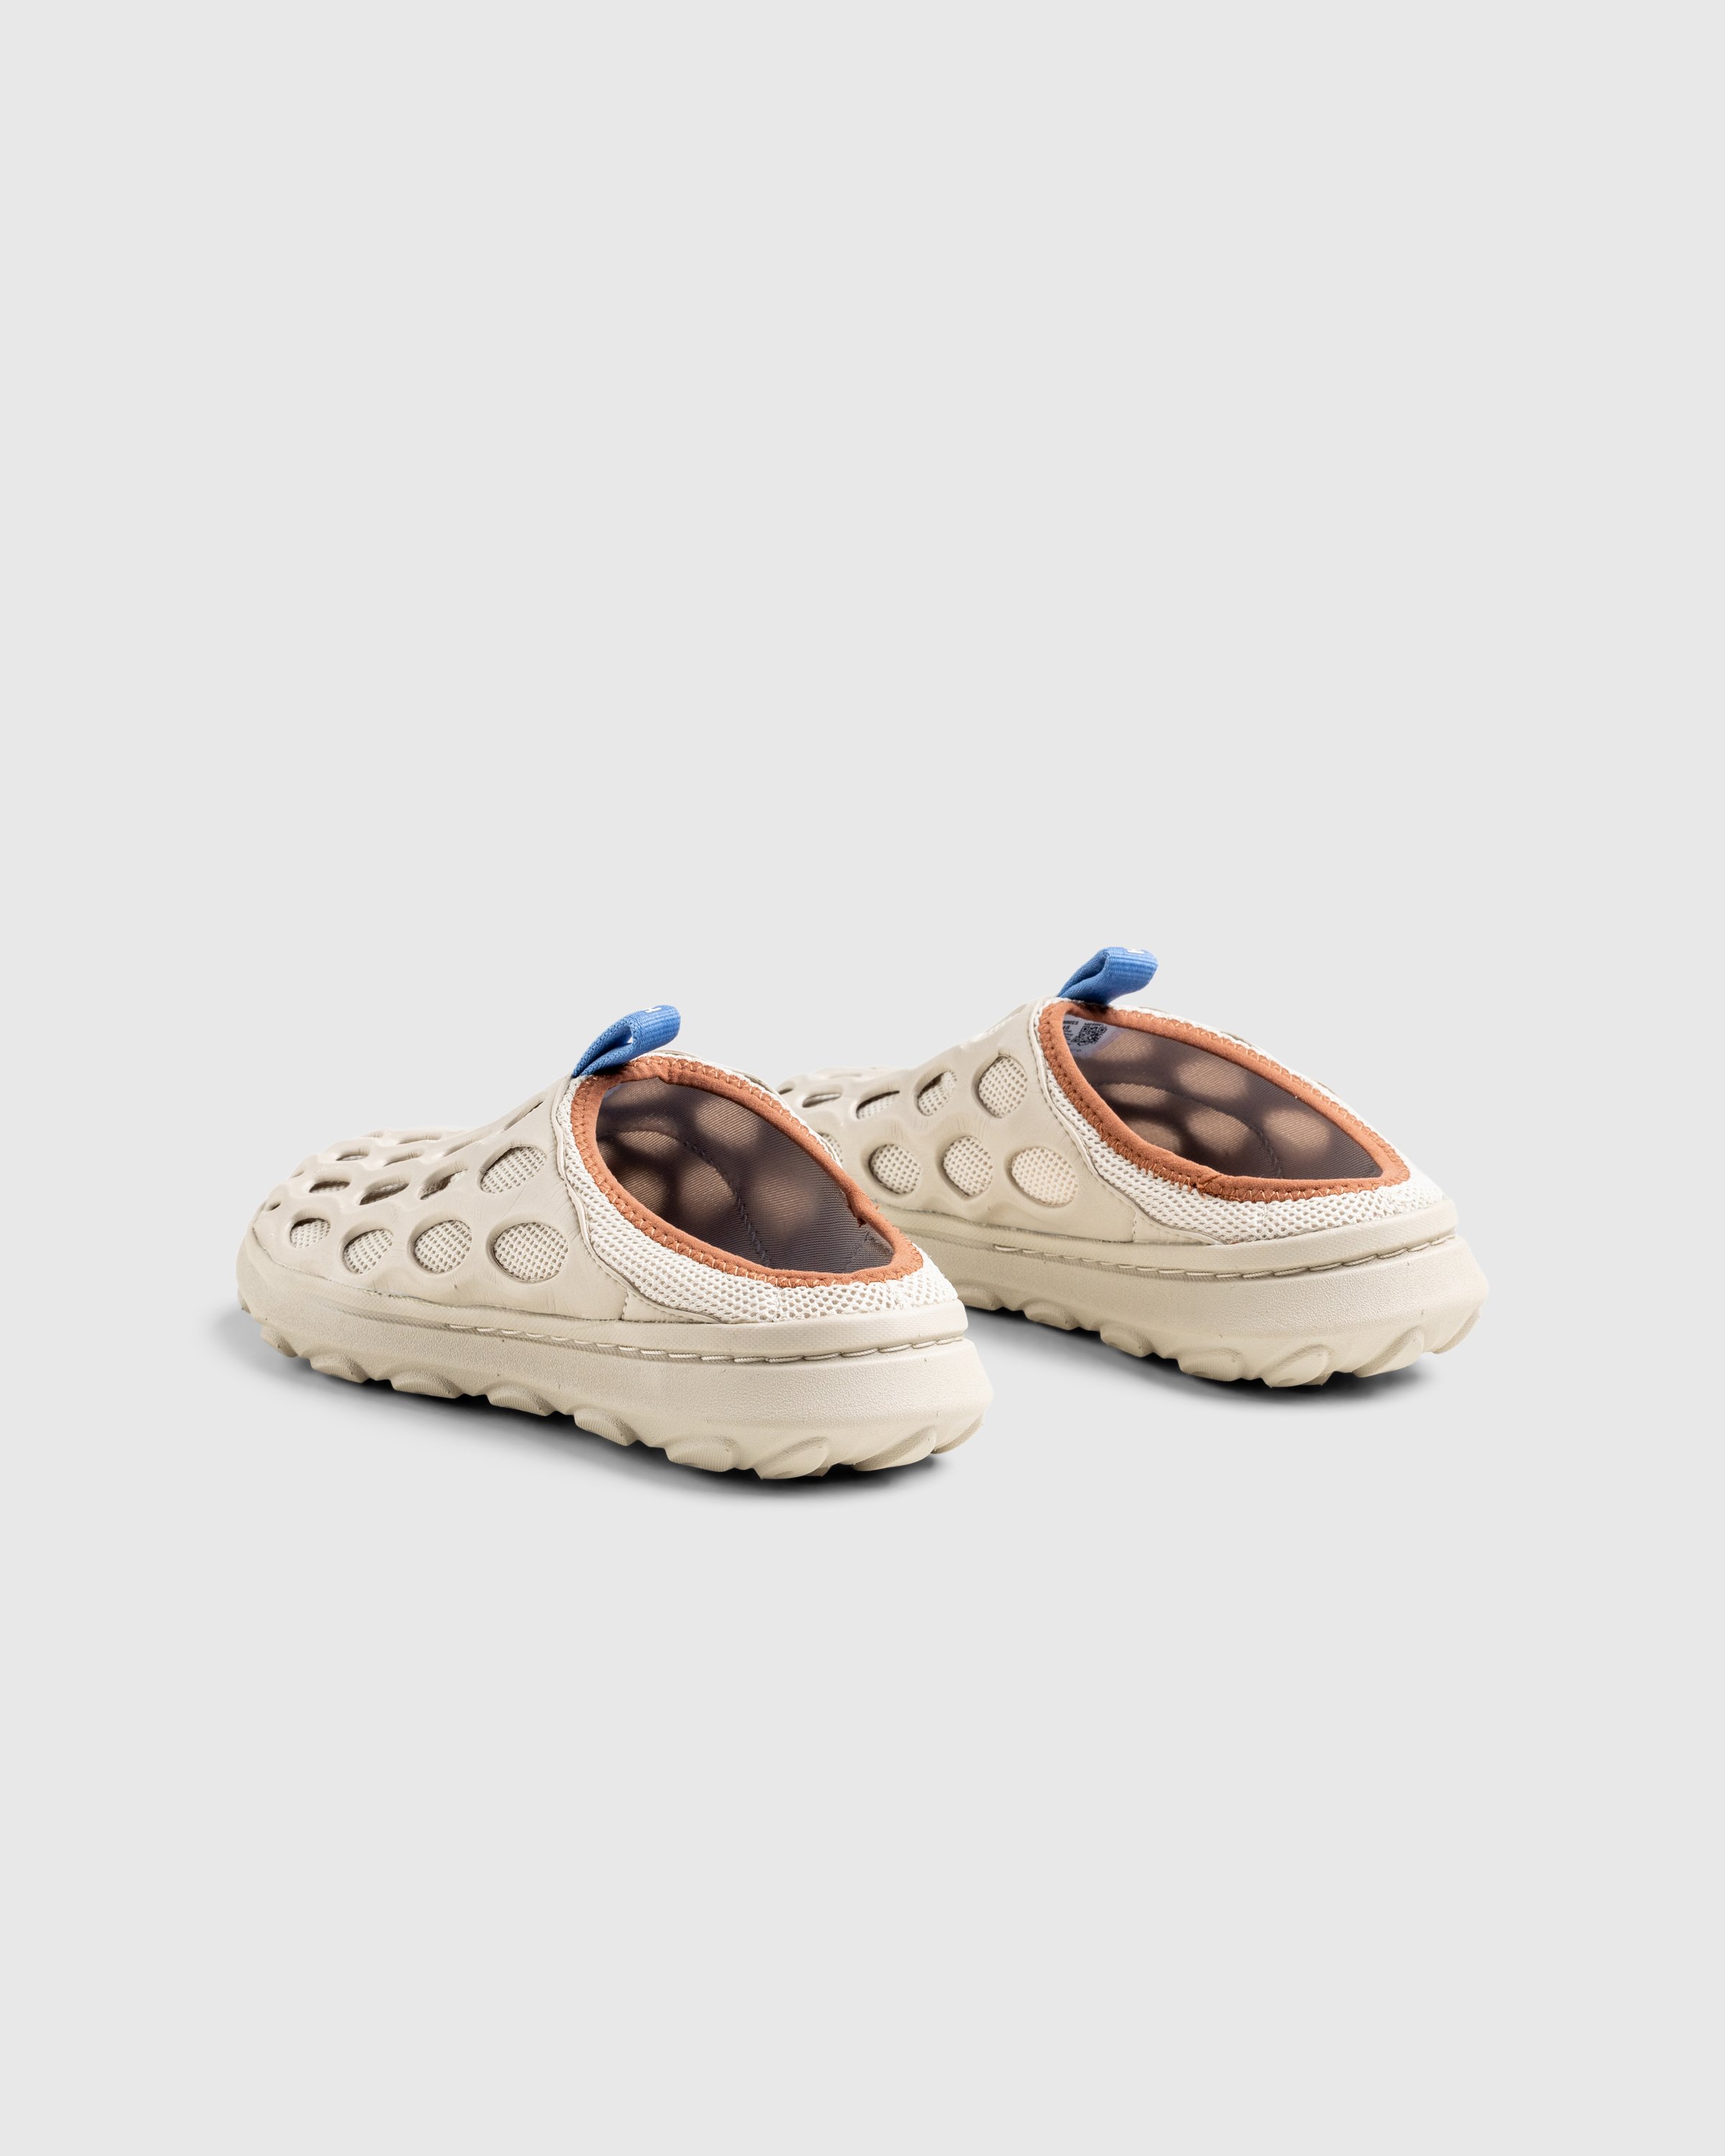 Merrell x Highsnobiety - Mens Hydro Mule Peyote - Footwear - Beige - Image 4